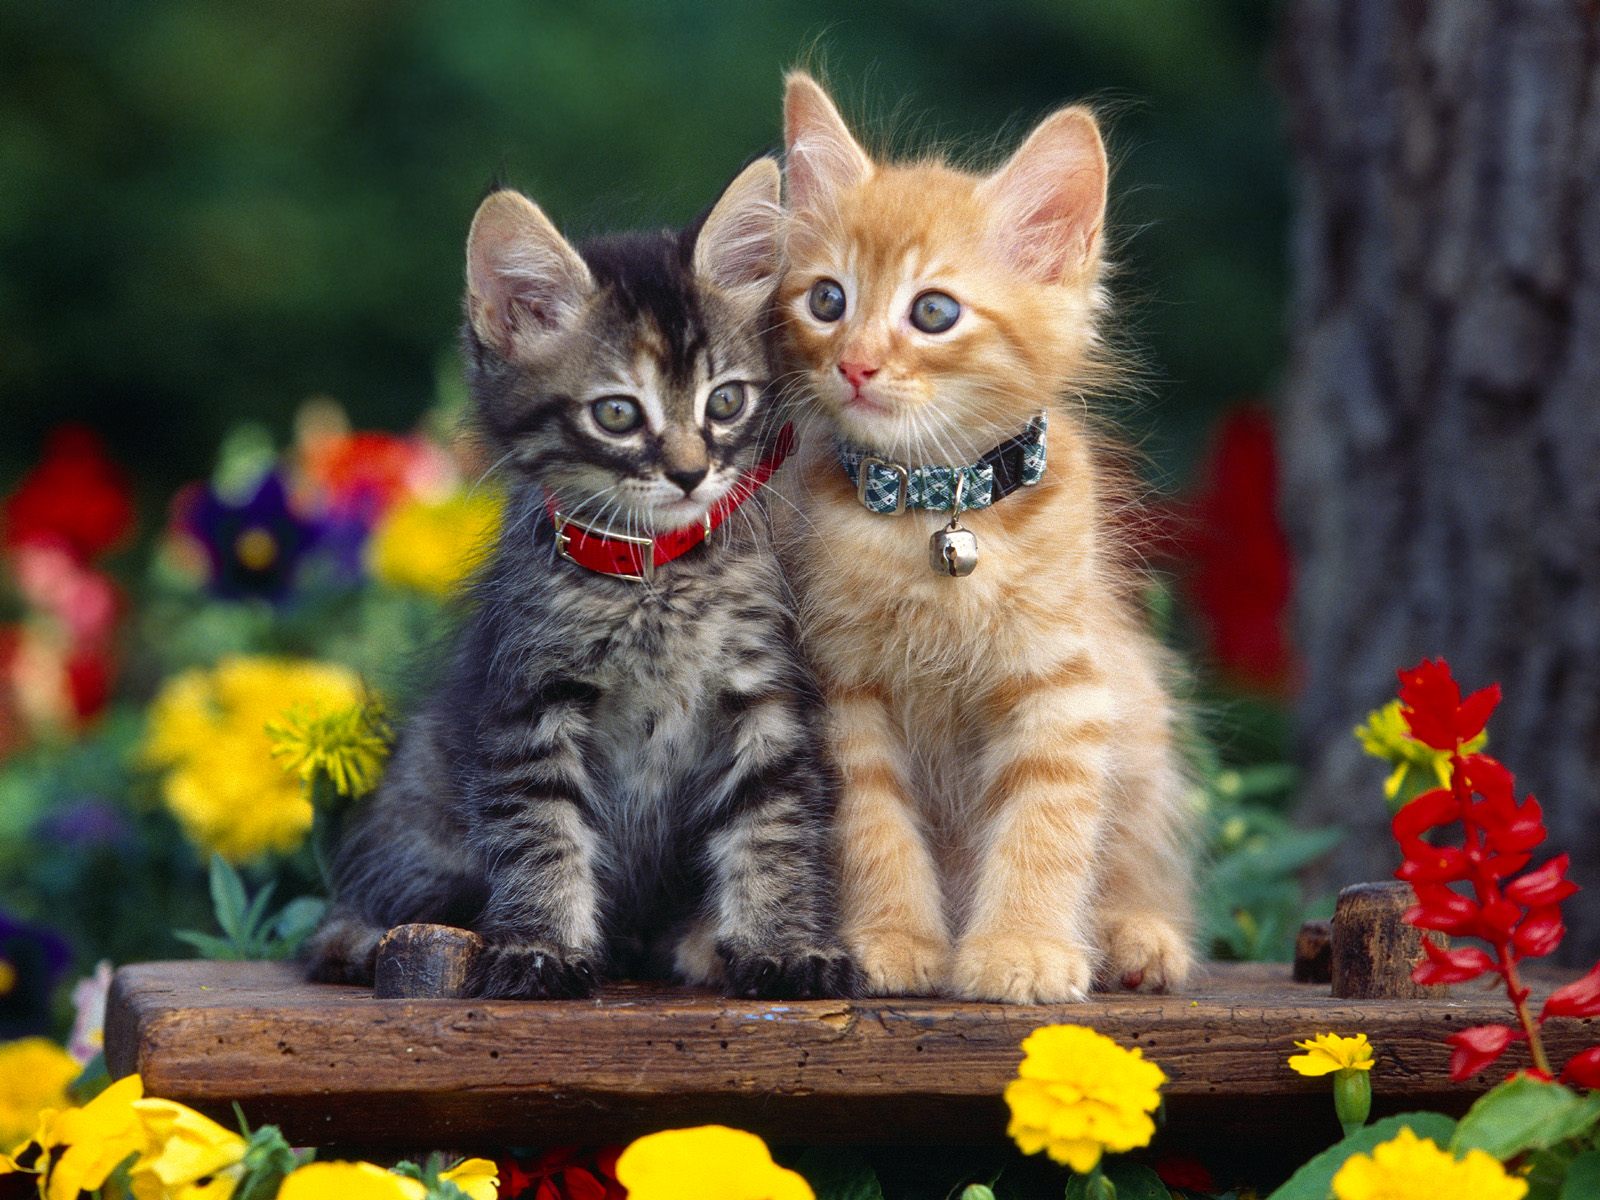 Cute Cats - Cats Photo (33440894) - Fanpop